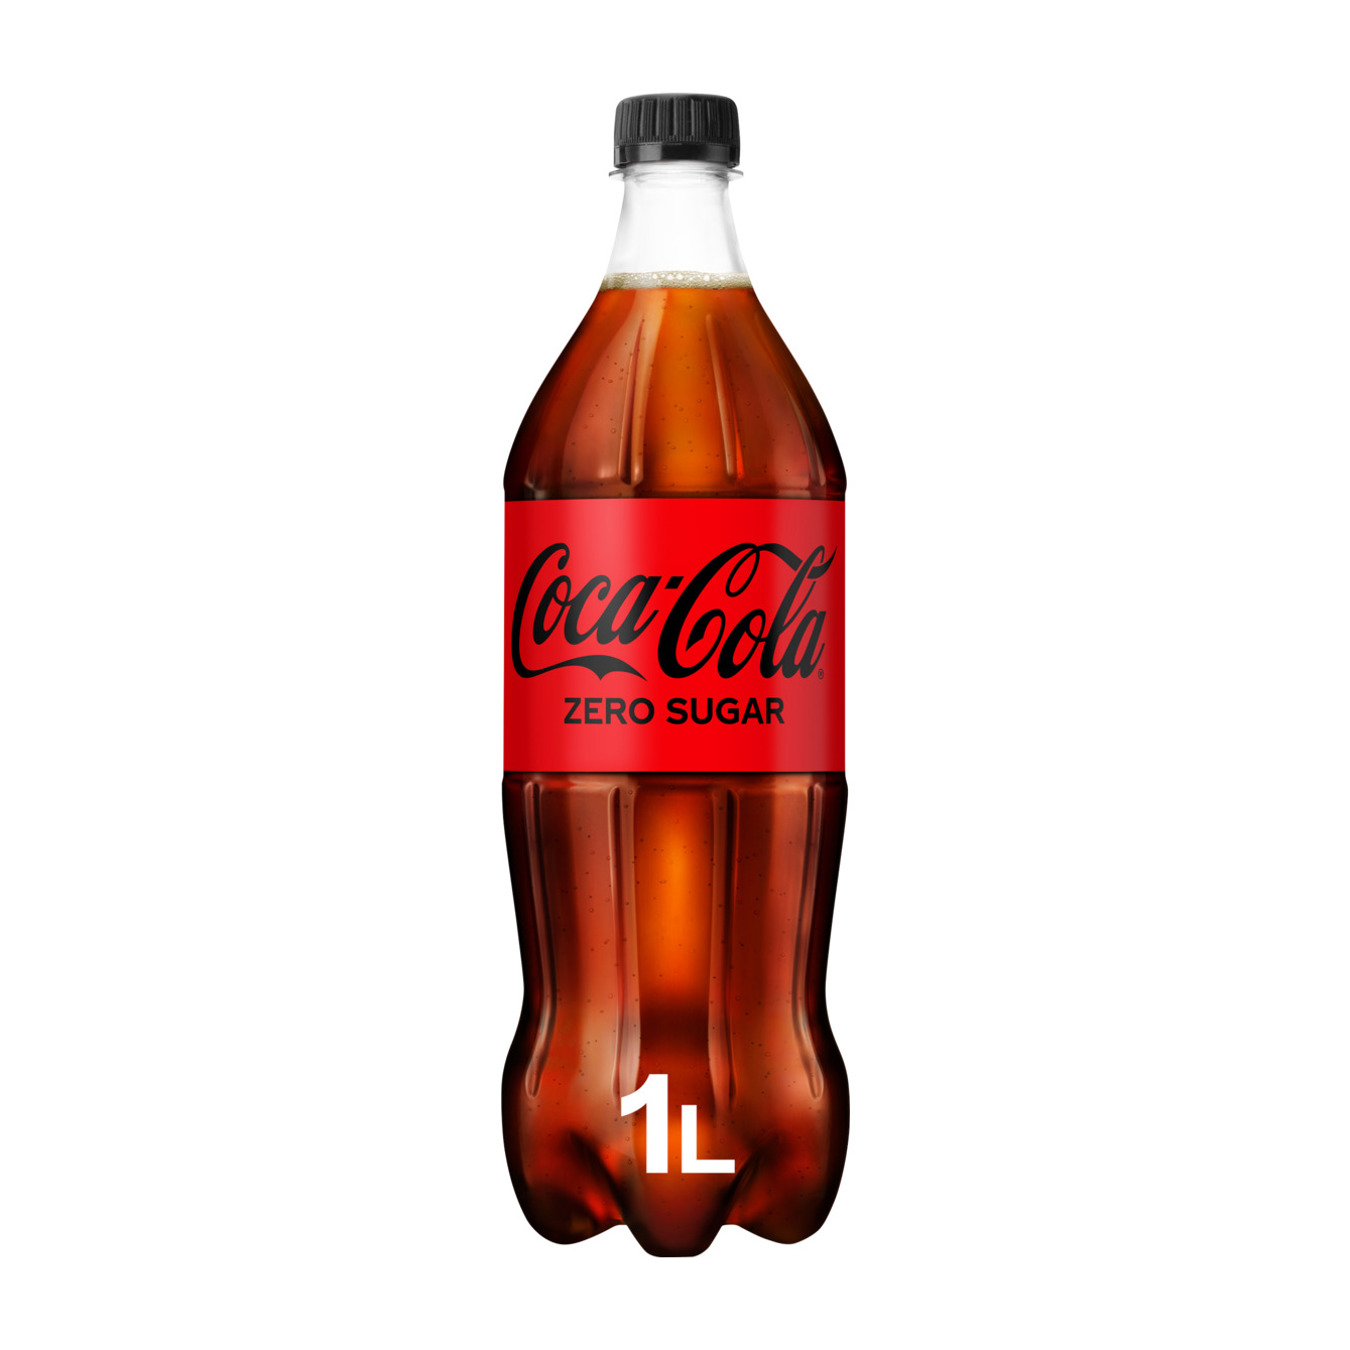 Coca-cola Zero sugar product photo